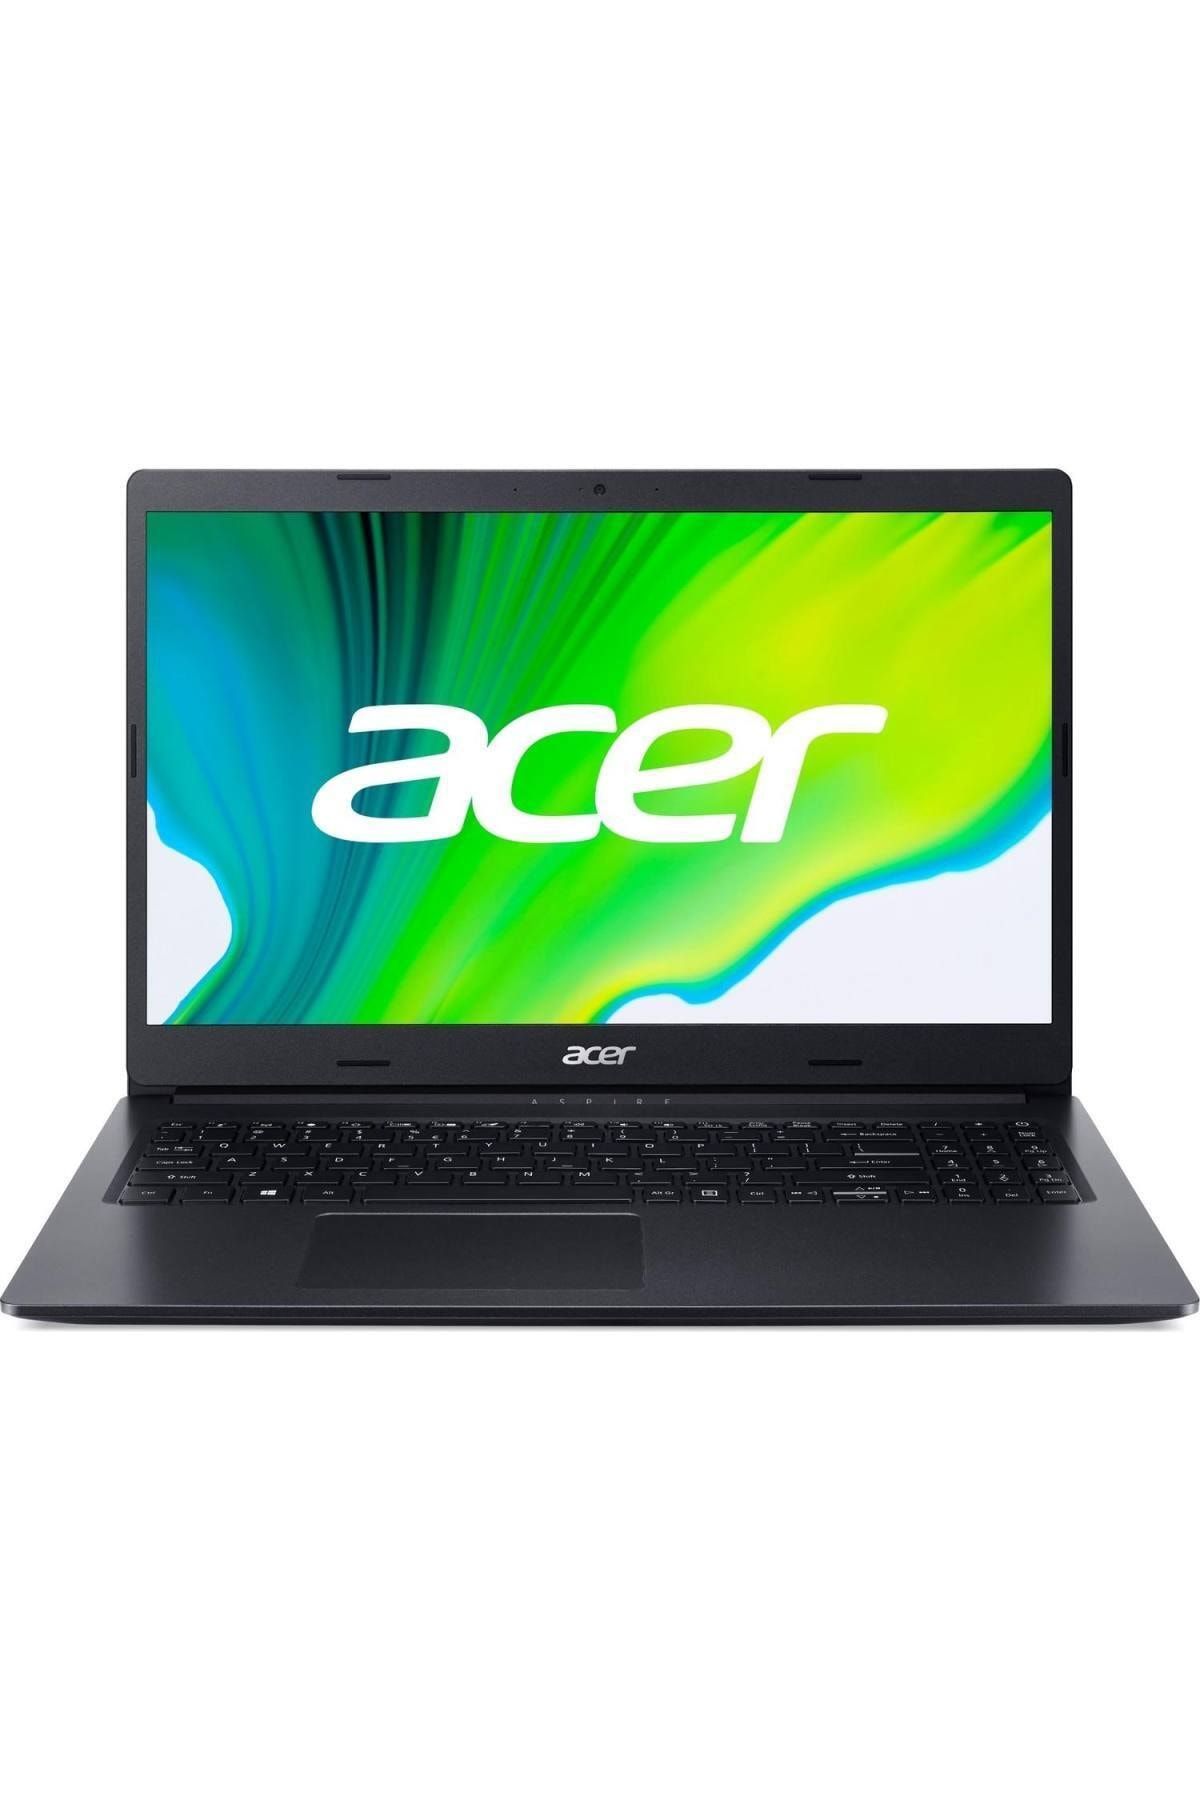 ACER Aspire A315-57g Intel Core I5 1035g1 8gb 512gb Ssd Mx330 W10 15.6" Fhd Laptop Nx.hzrey.007